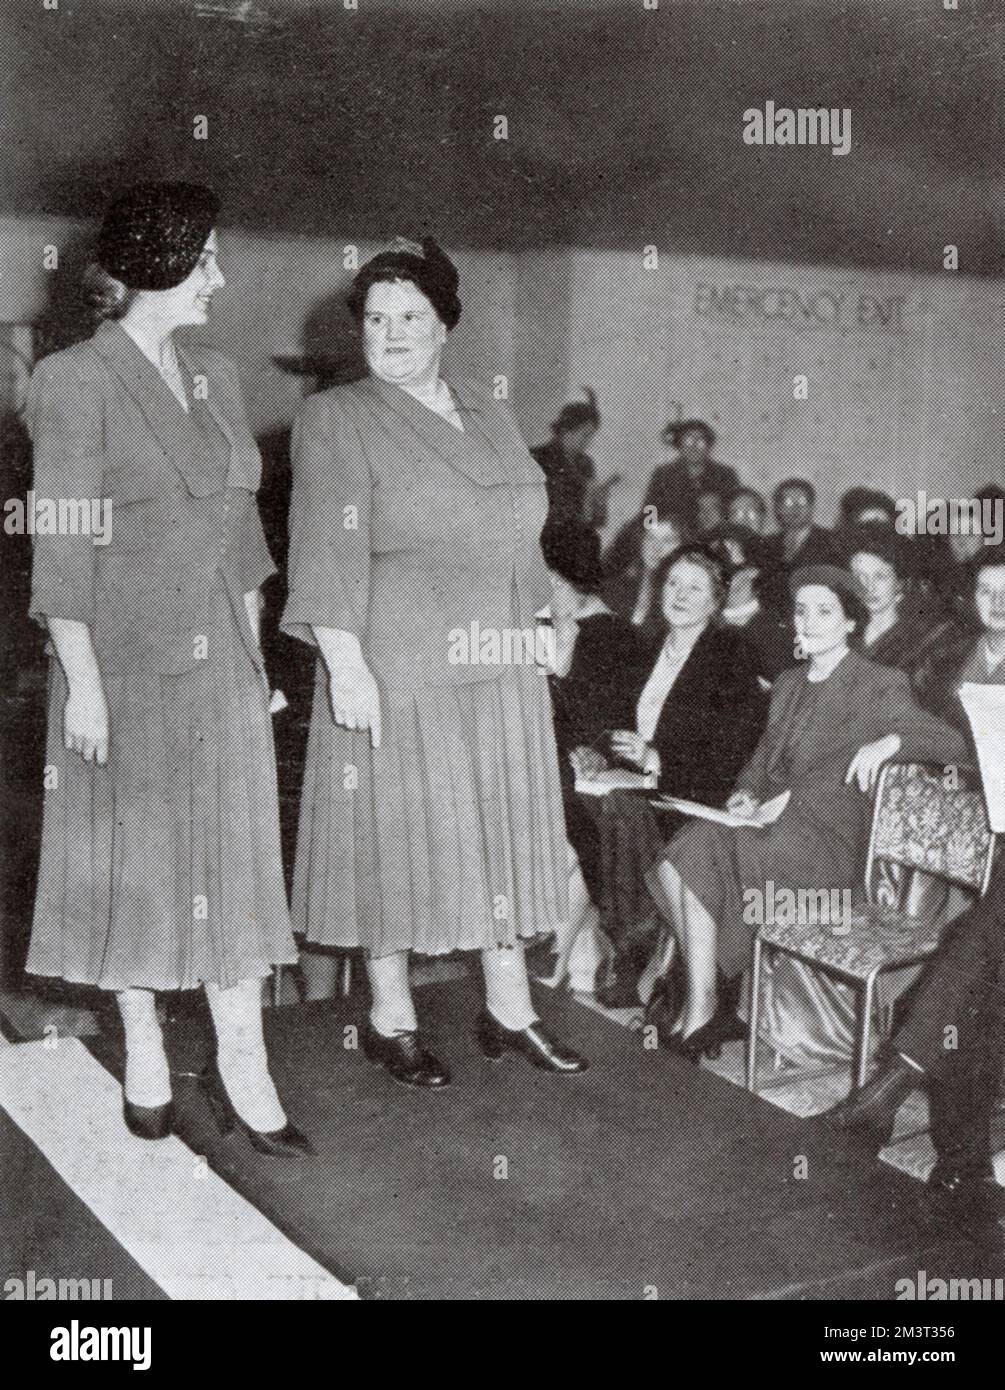 Mme Bessie Braddock (à droite) dans son rôle de "grand reine de la mode". Bessie Braddock (1899 - 1970), députée travailliste de la Liverpool Exchange Division, avec Mlle Elizabeth Fry, qui présente la même robe modèle à l'affichage de mode grand format Dorchester à Londres, 1951. Mme Braddock est en demande pour ouvrir des défilés de mode de grande taille. Ses commentaires sont toujours piqueux, comme en témoigne sa déclaration : « J'aime une robe que quelqu'un avec des hanches décentes peut porter. » Sur les jeux de couleurs, elle dit : « vous êtes toujours bien en bleu marine ». Elle a décrit le nouveau look comme « le caprice ridicule des personnes inactives ». Date: 1951 Banque D'Images